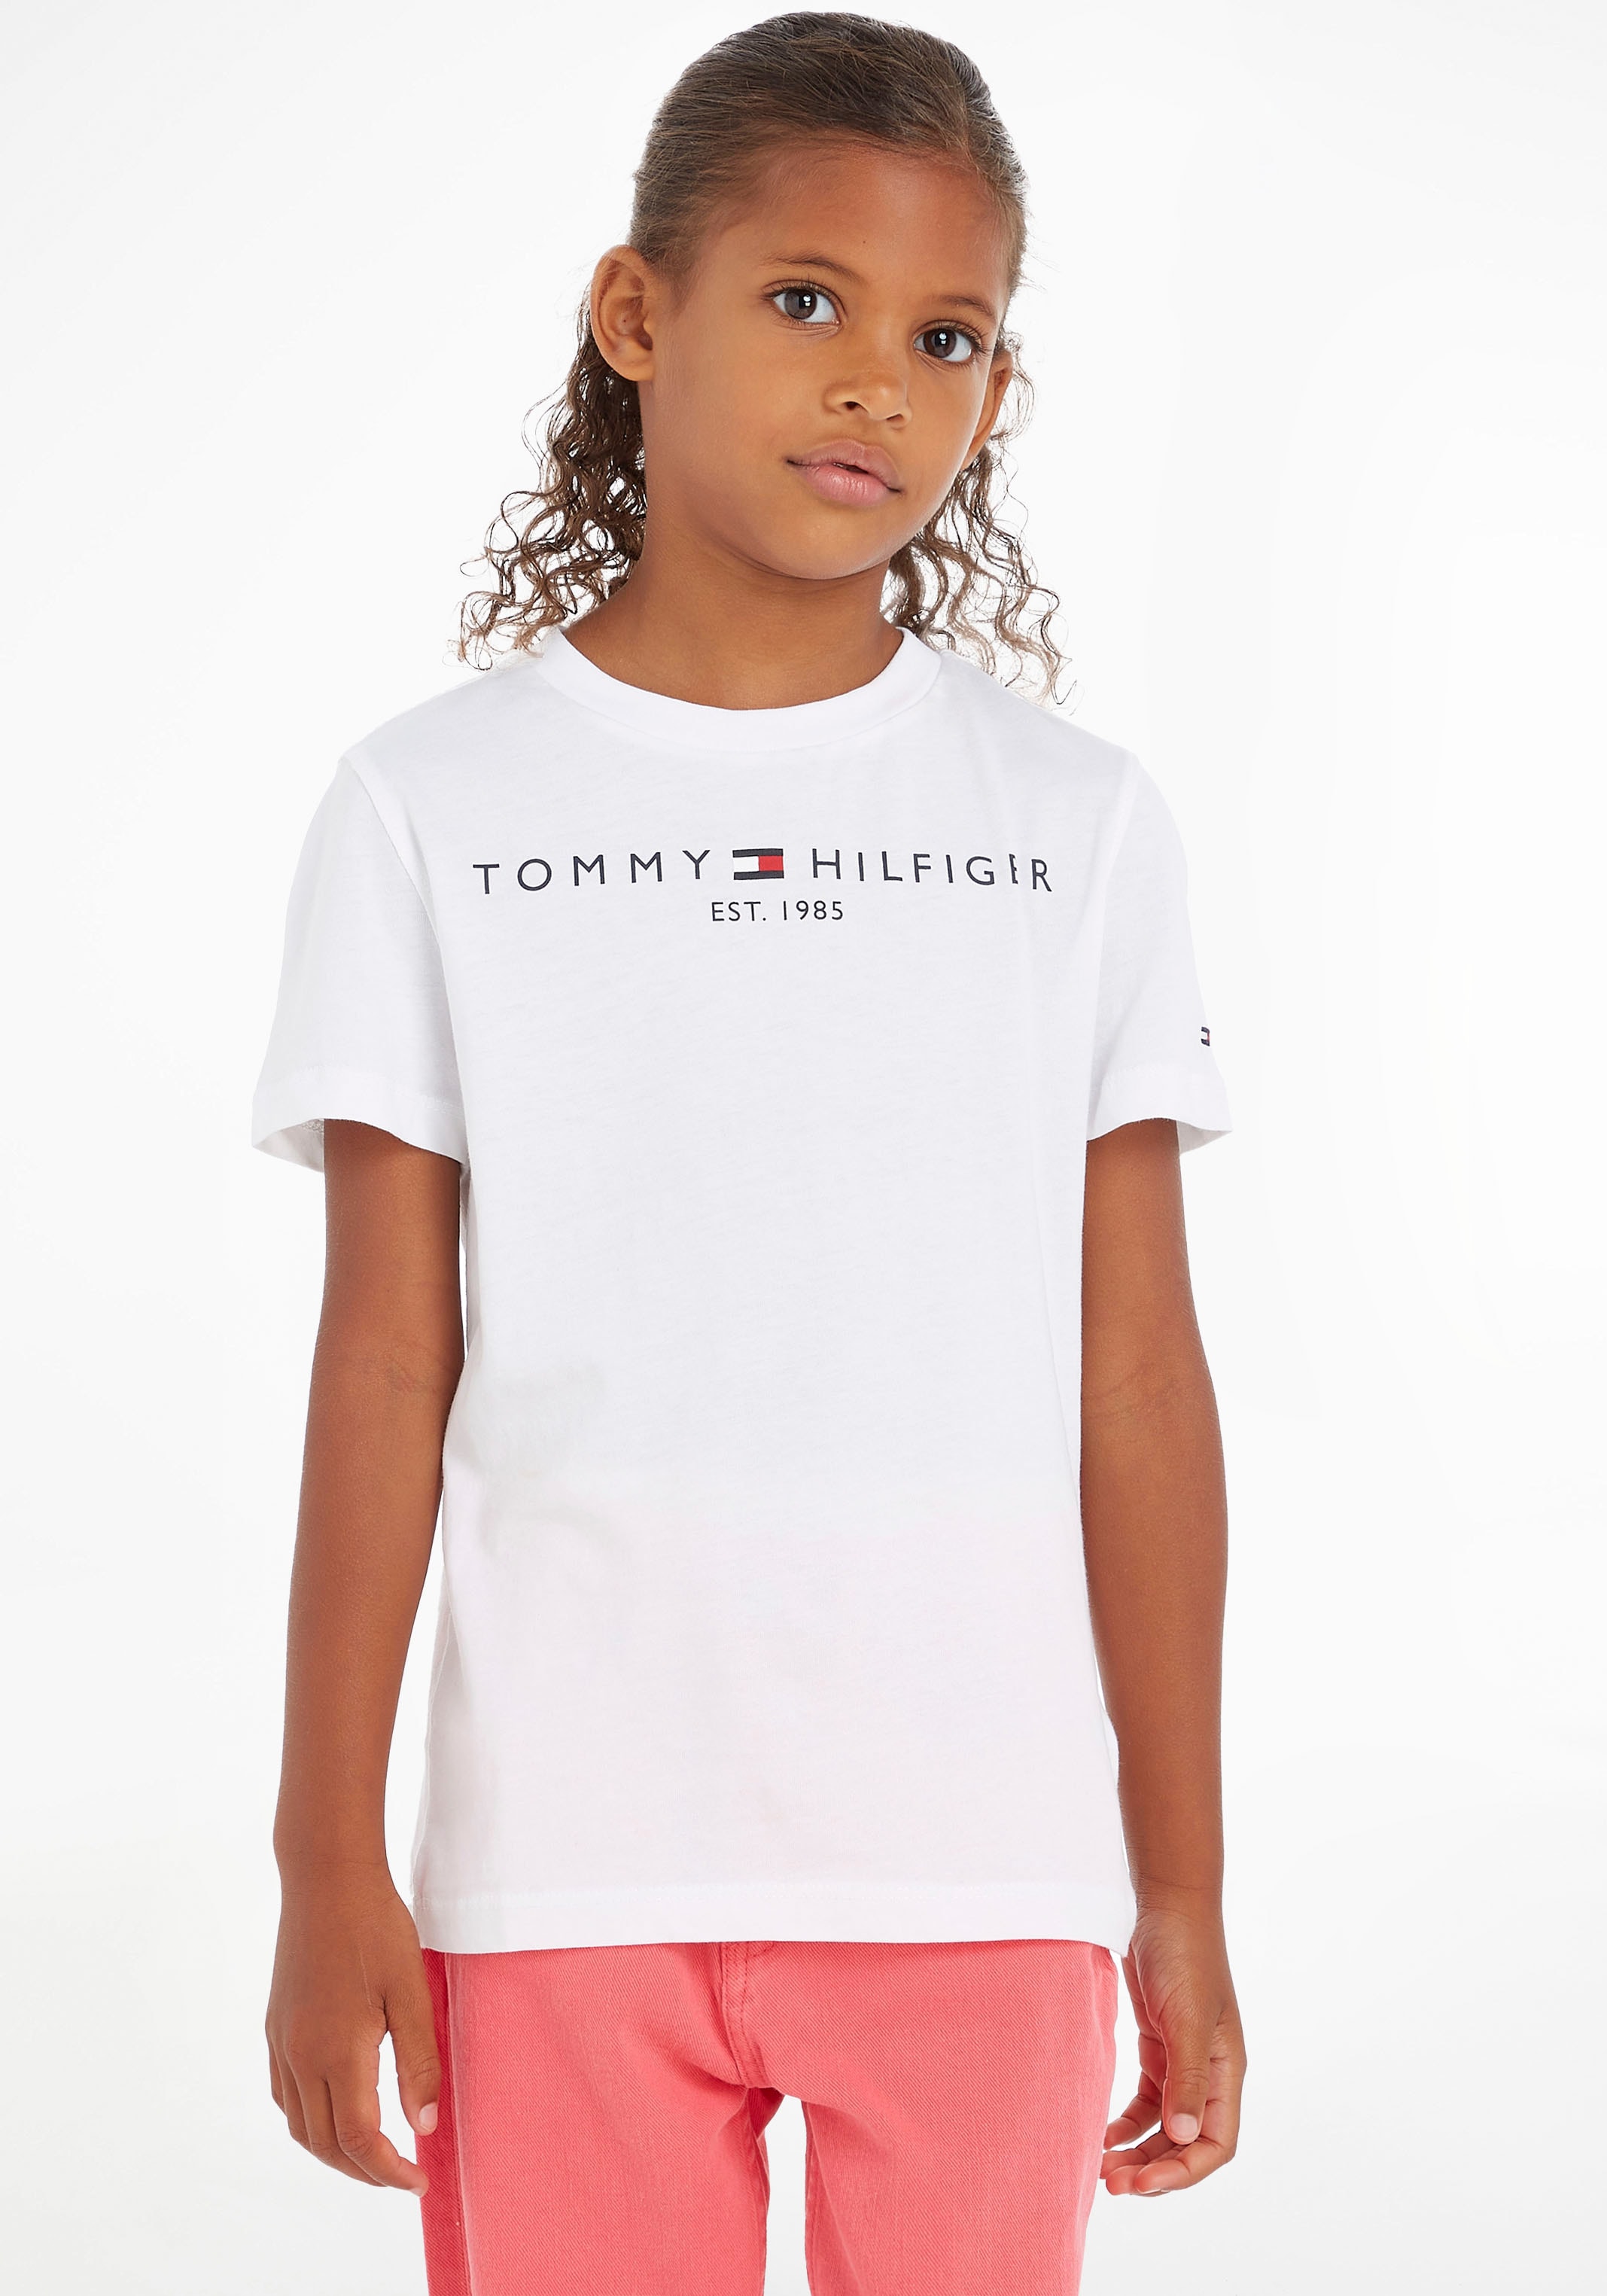 Hilfiger Kinder Kids bei Tommy Junior MiniMe,für Jungen und »ESSENTIAL TEE«, Mädchen T-Shirt